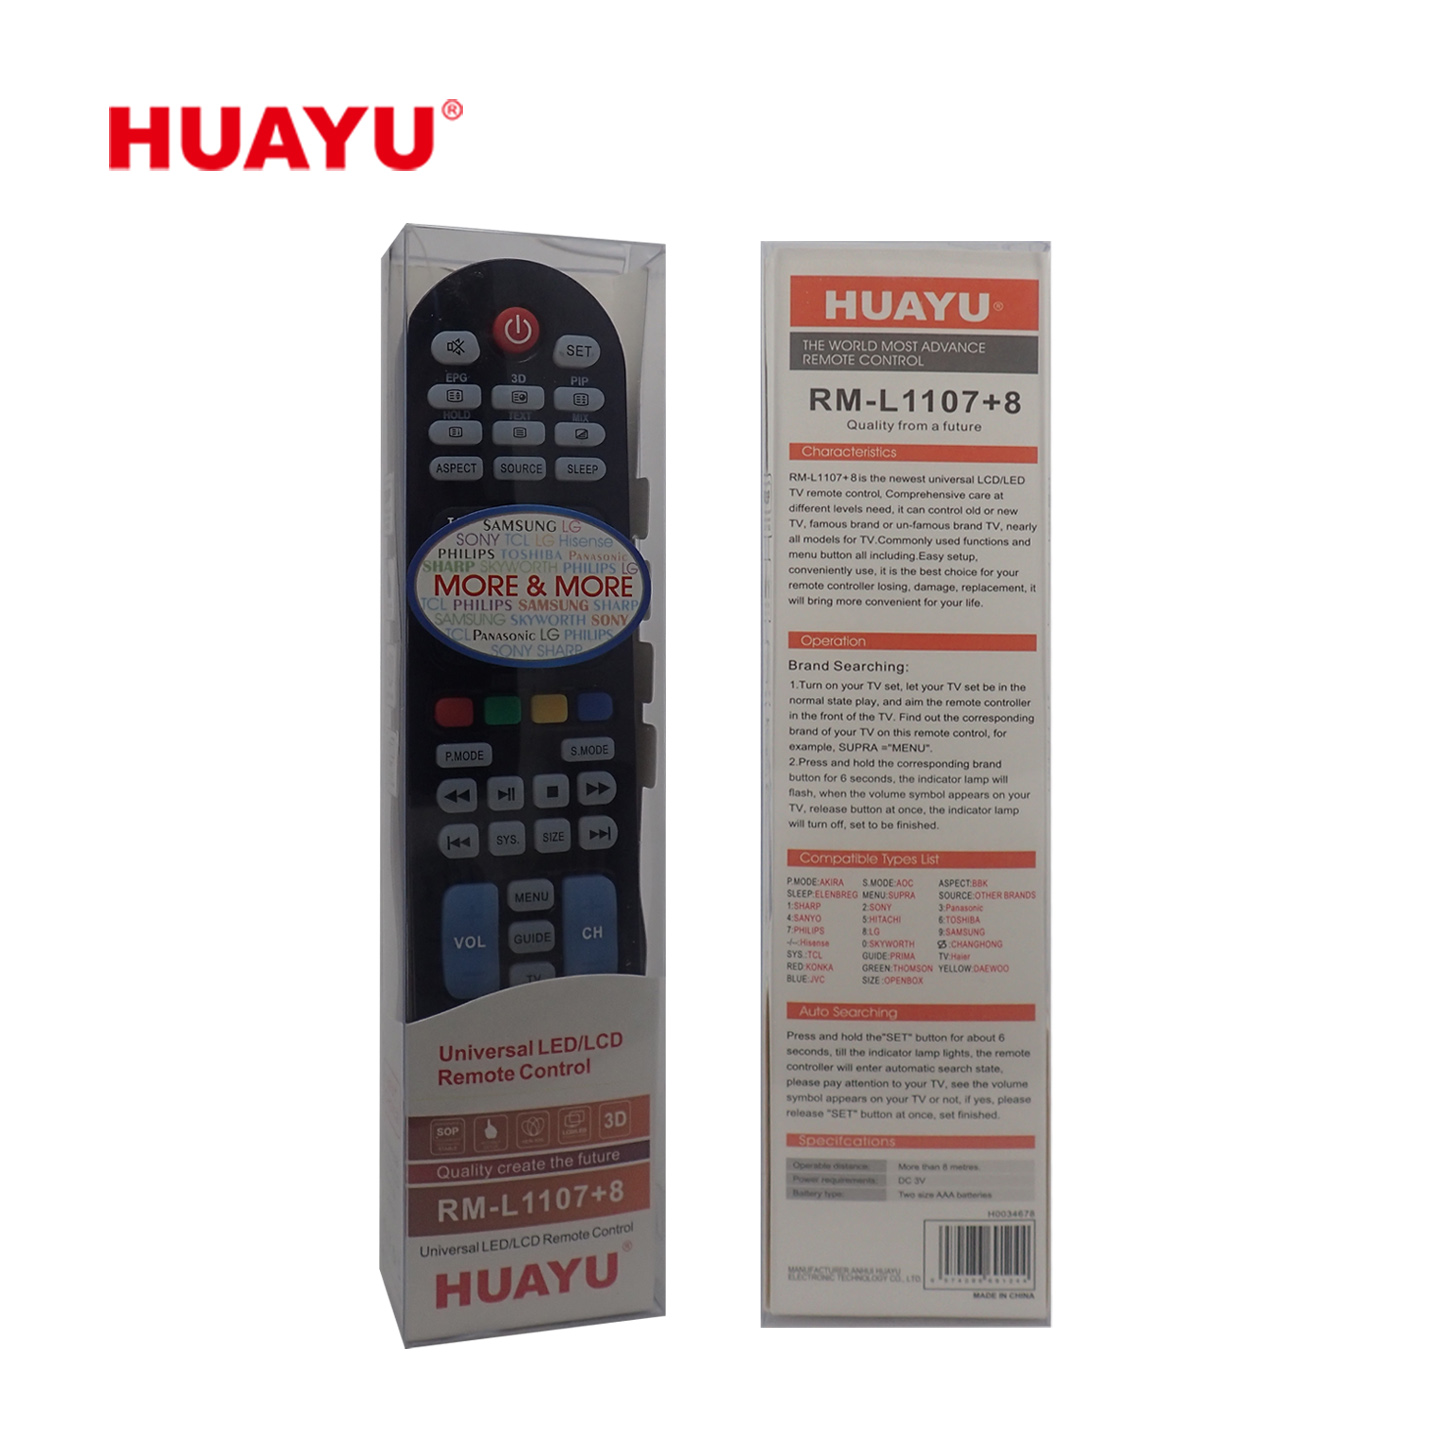 Как подключить универсальный пульт huayu. Пульт универсальный Huayu RM-l1107+8. Универсальный пульт Huayu для Philips RM-l1225. RM-l1107 +8 пульт для телевизора. Пульт Ду универсальный Huayu Samsung RM - L 898 LCD TV.